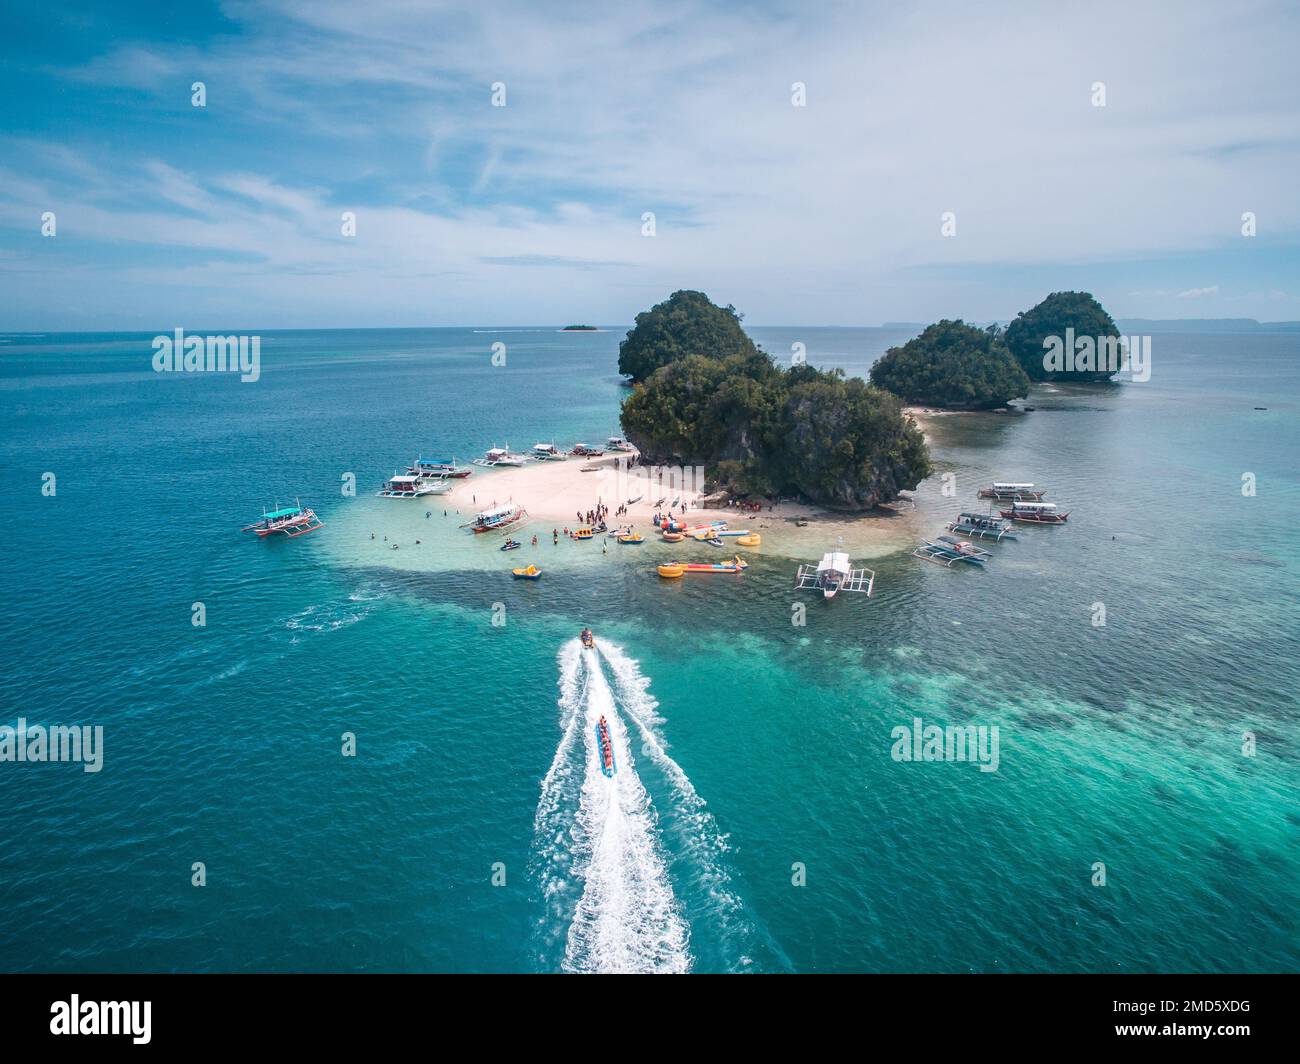 An aerial view of Hagonoy Island in Salvacion, Surigao del Sur, Philippines Stock Photo